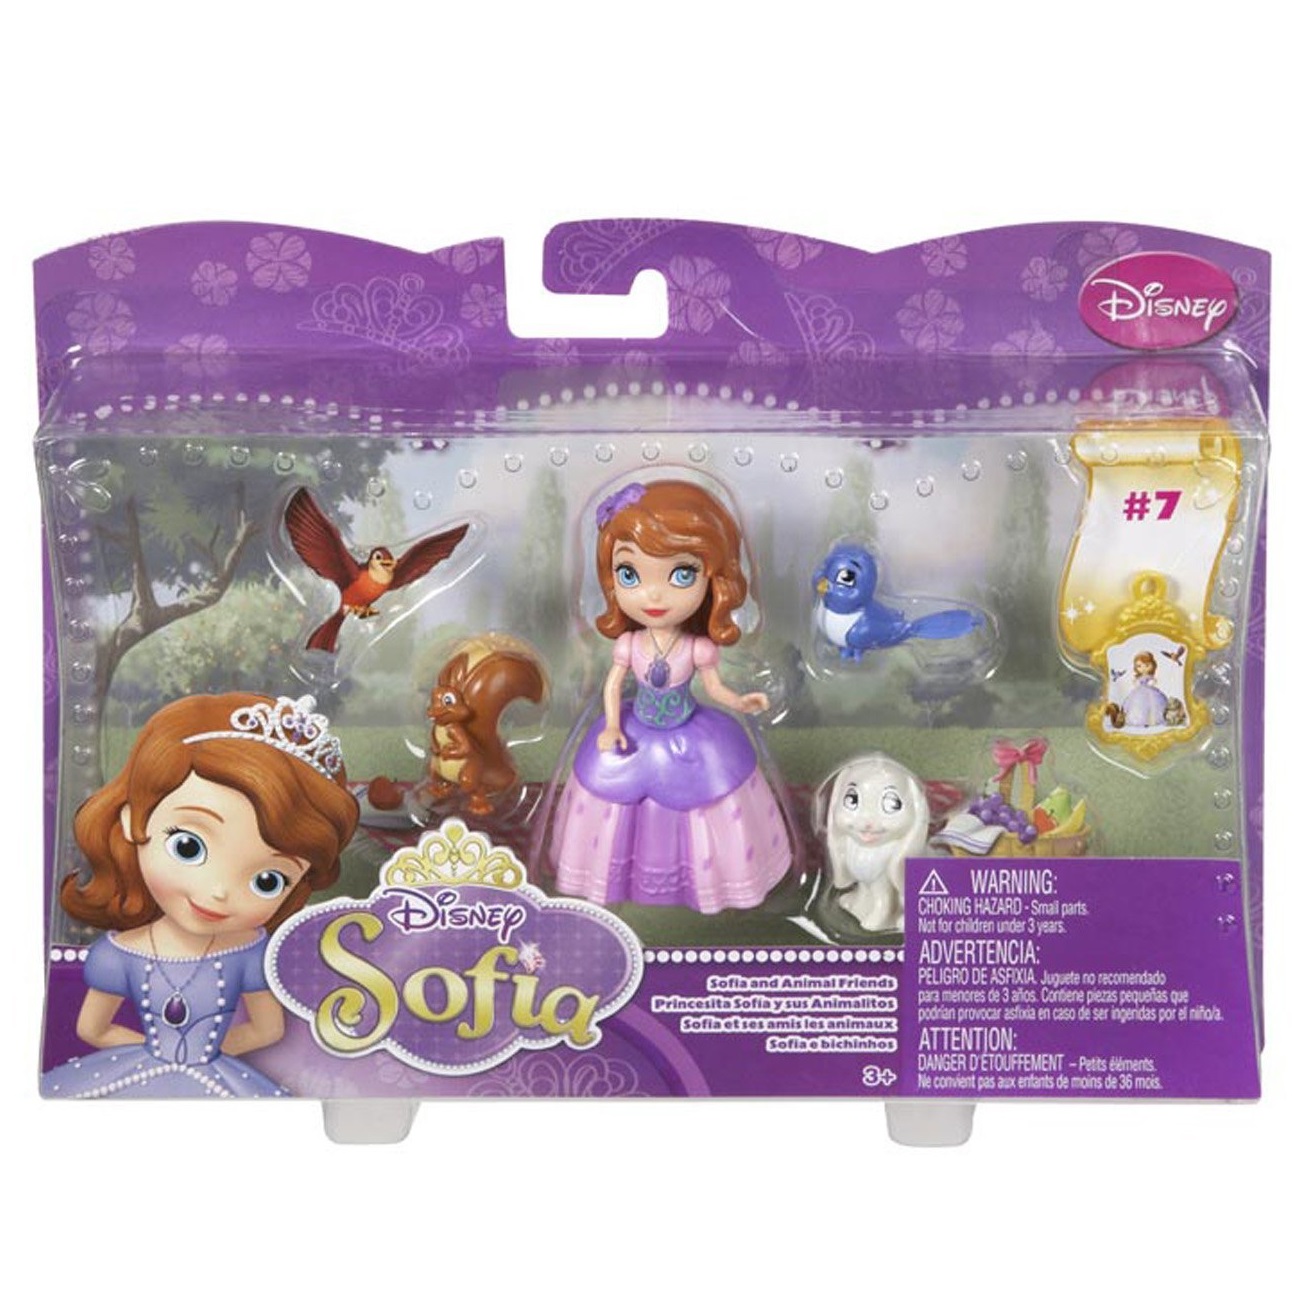 Bộ đồ chơi Búp bê Disney Sofia và những người bạn (Disney Sofia The First Sofia and Animal Friends Fashion Doll Playset)